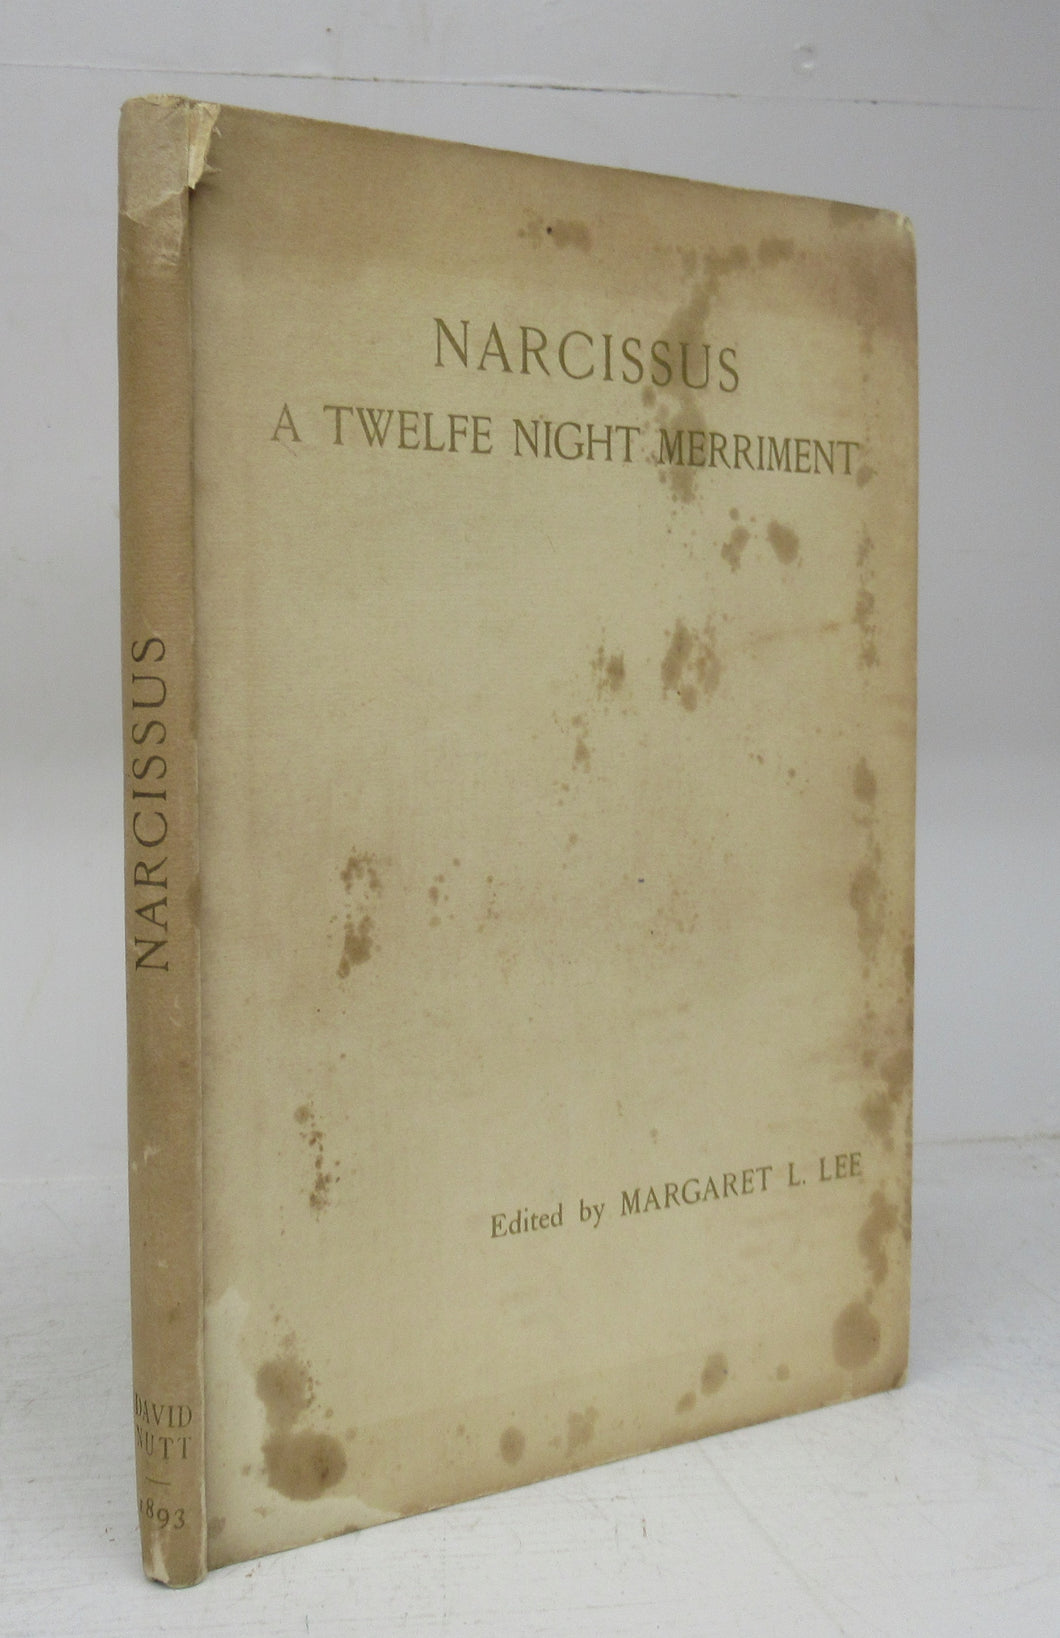 Narcissus: A Twelfe Night Merriment